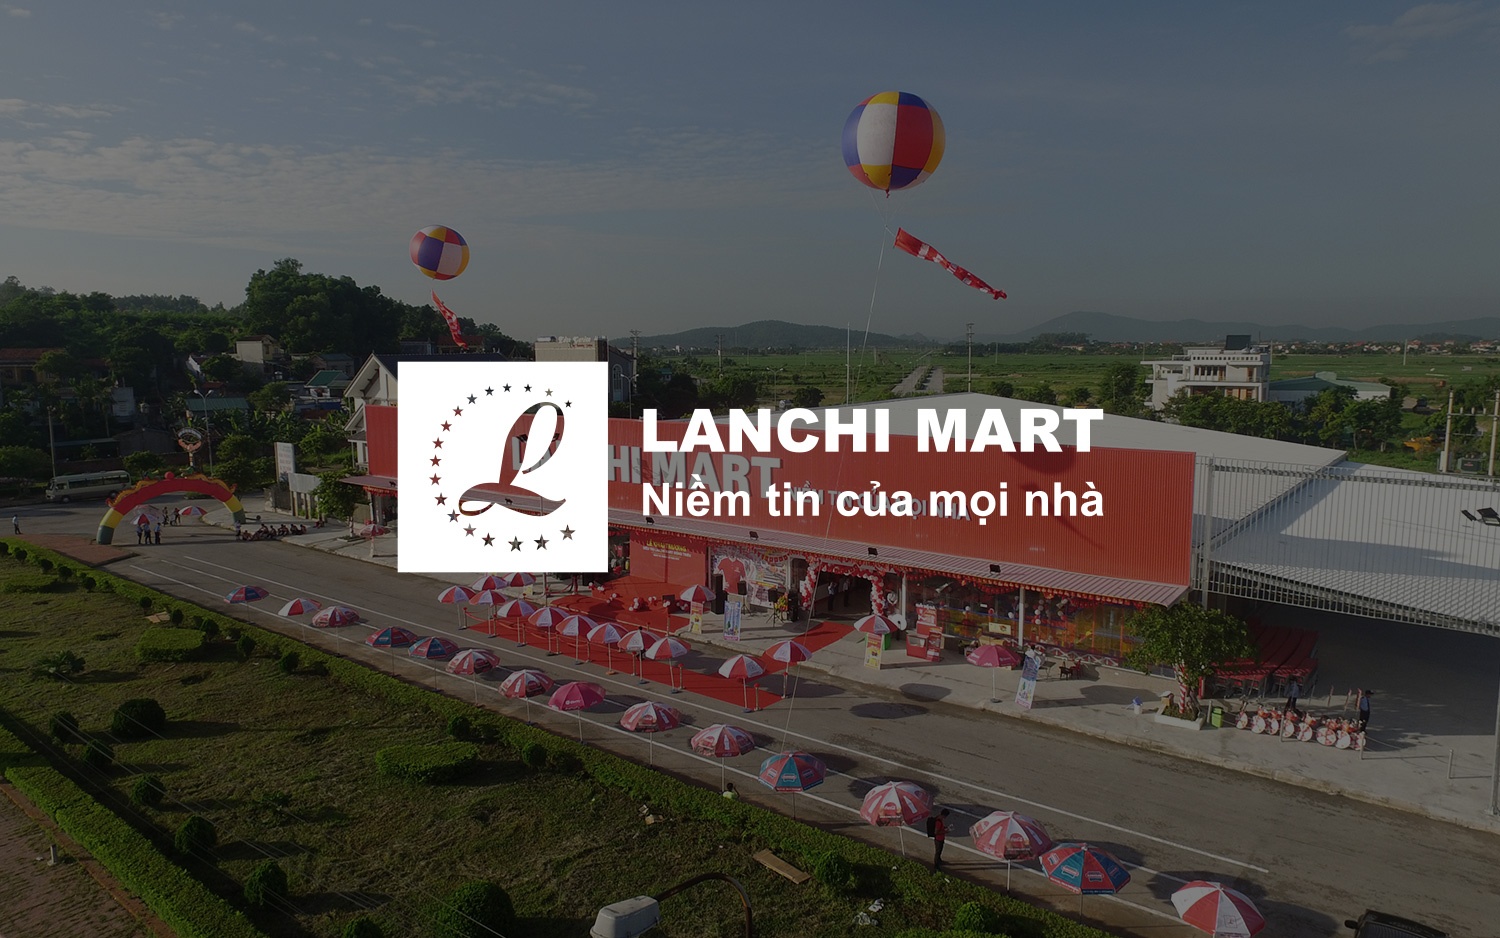 Lanchi Mart